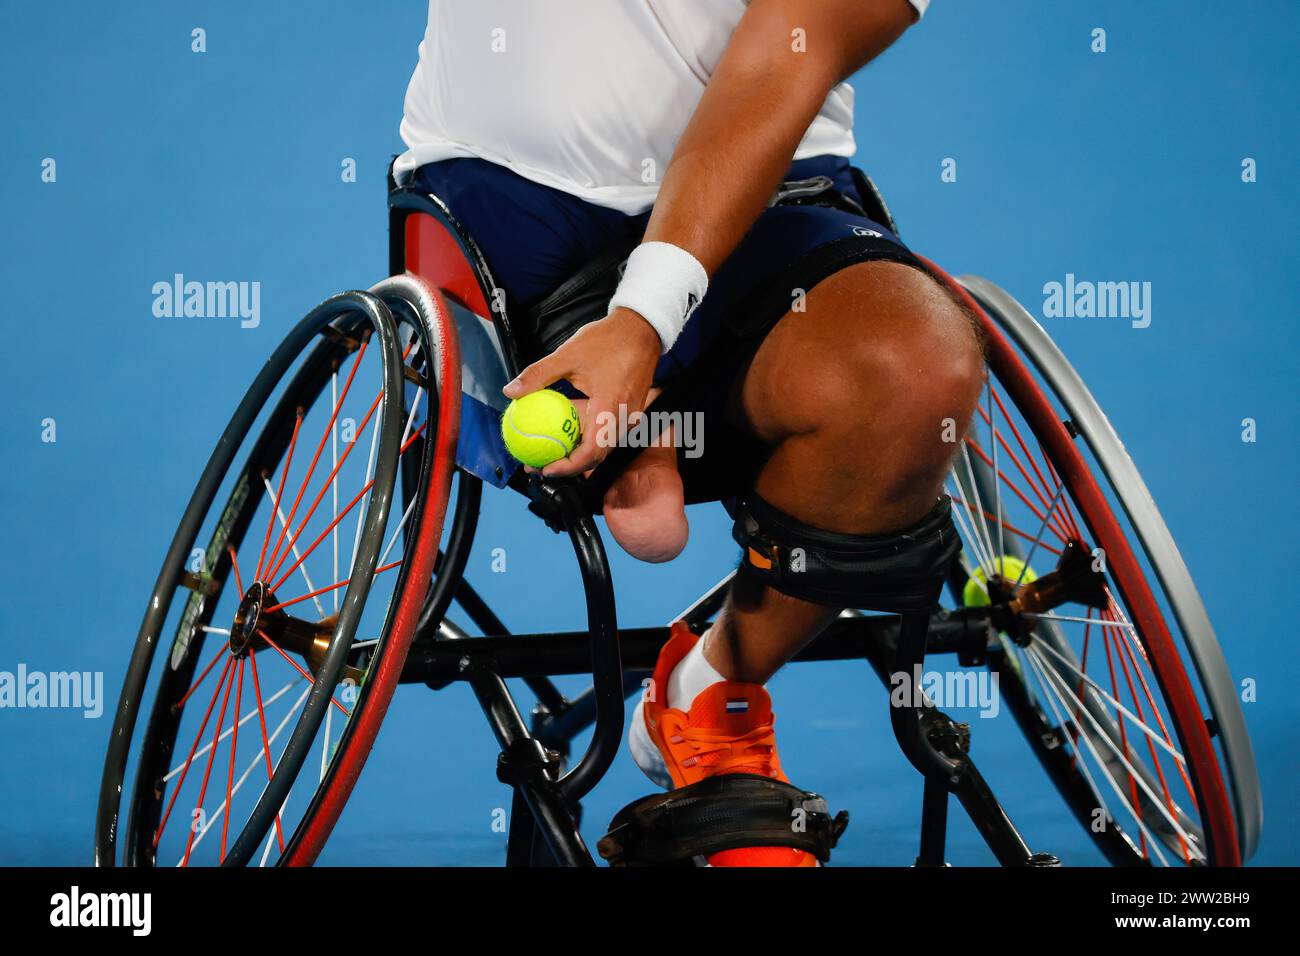 Tom Egberink aus den Niederlanden gewann bei den Paralympics 2020 in Tokio die Silbermedaille im Rollstuhl-Tennis-Einzelfinale der Männer, besiegte Shingo Kunieda (nicht im Bild). Shingo Kunieda gewann 6-1 6-2 gegen Tom Egberink Stockfoto